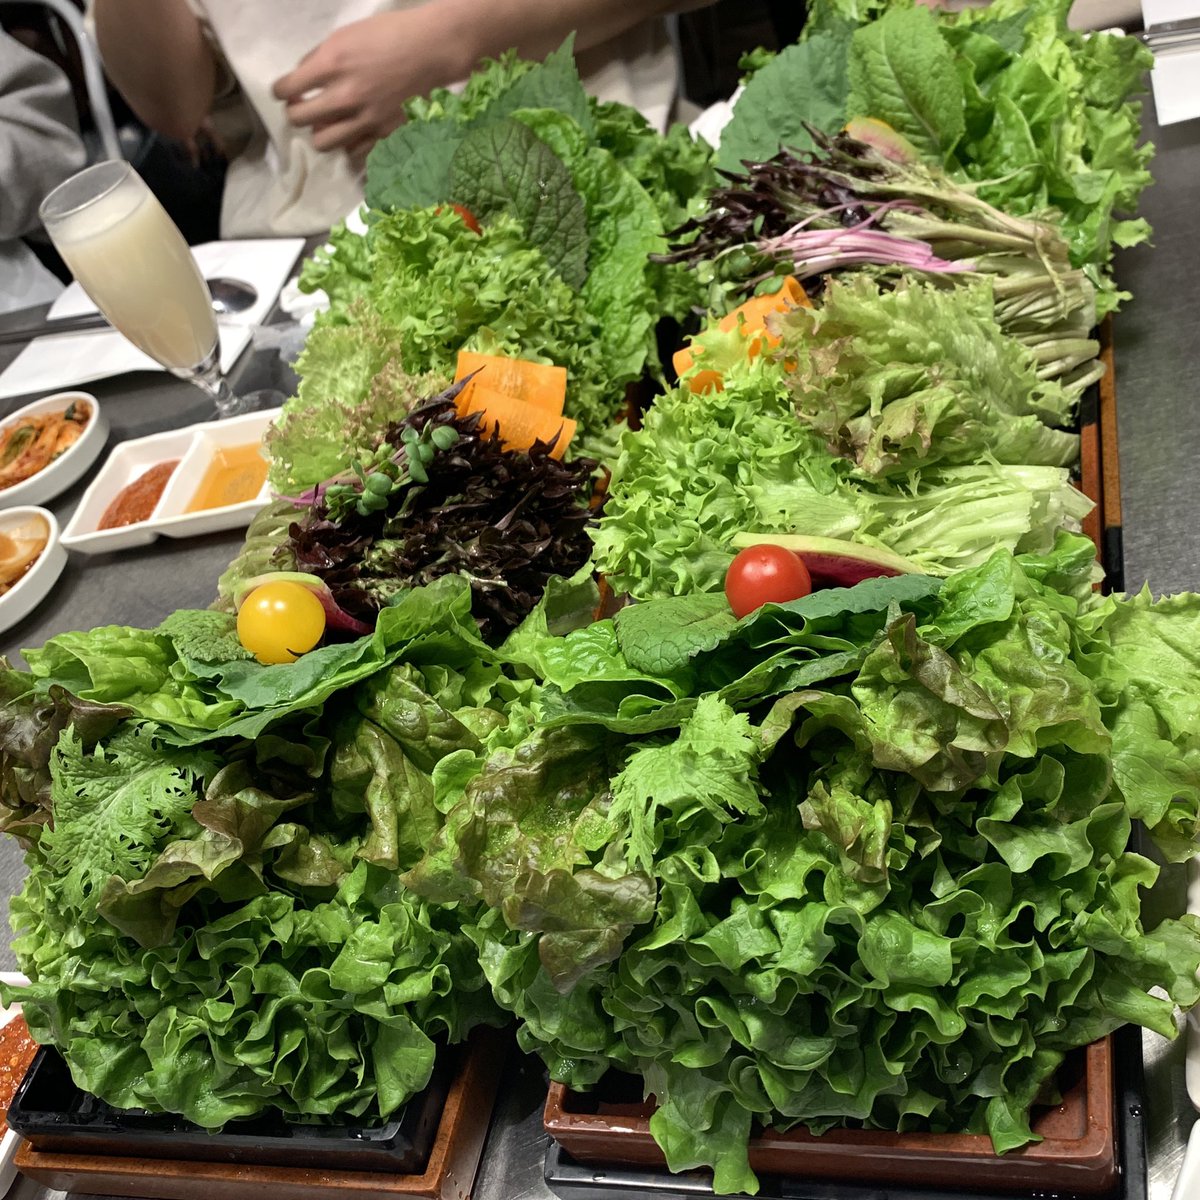 原宿からの新大久保で2Dカフェと一生分の野菜を摂取しました。非常に有意義ないちにち❗️あ〜話し足りない〜つぎはオールしましょう✌️ 